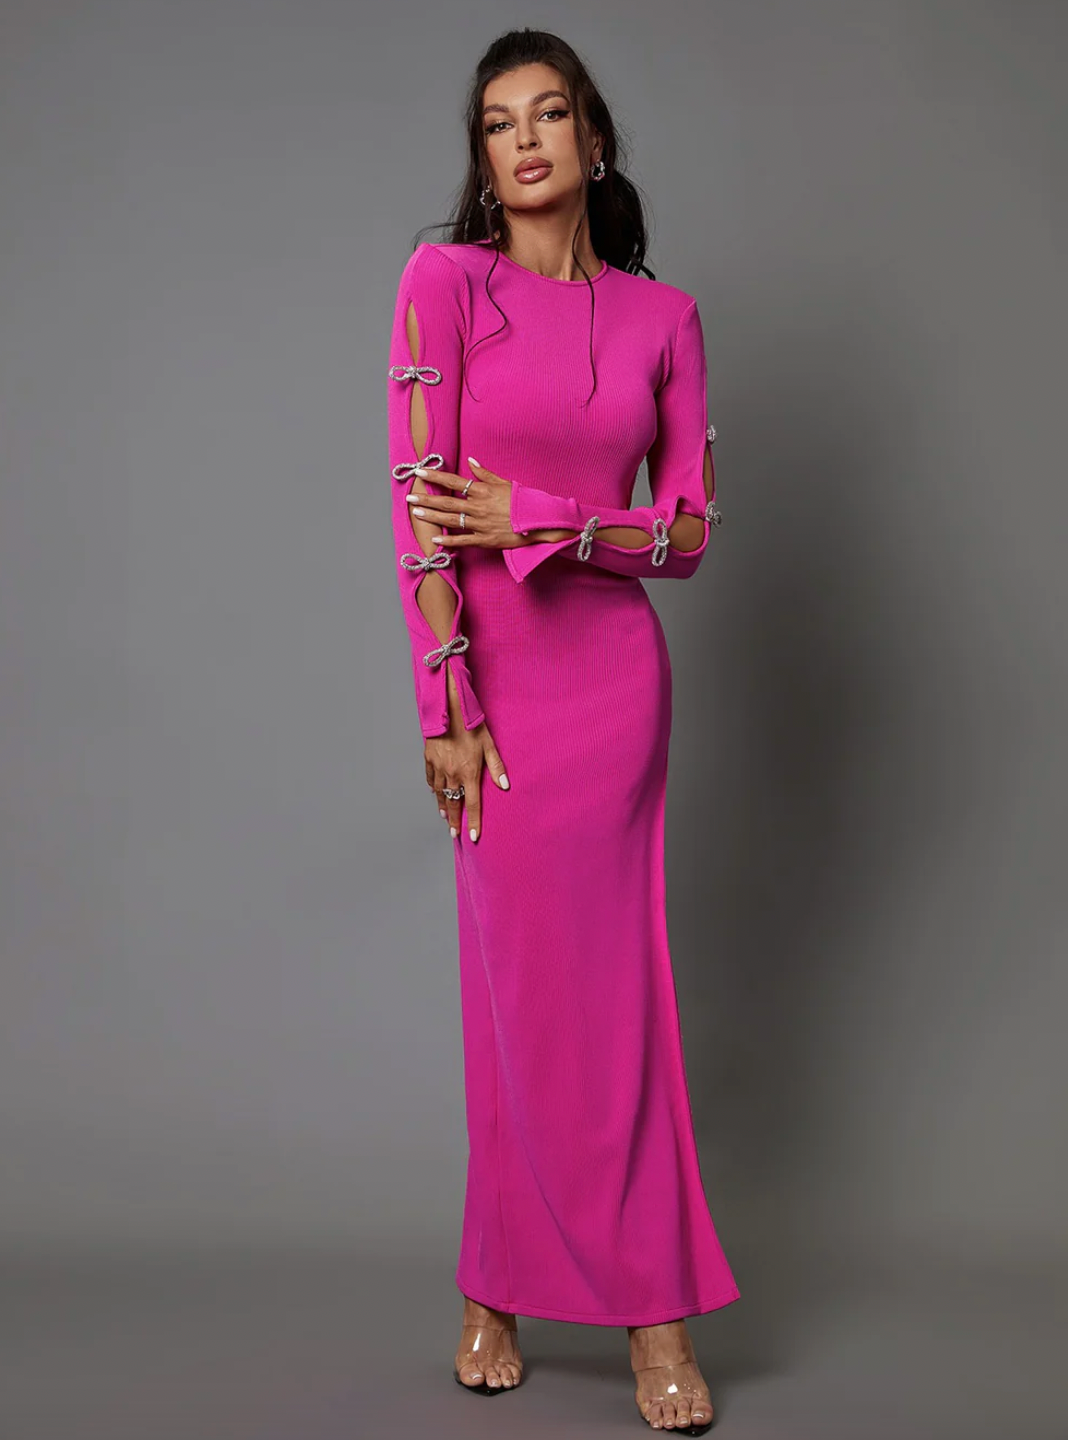 "Marina" Crystal Bow Cutout Sleeve Pink Bandage Dress